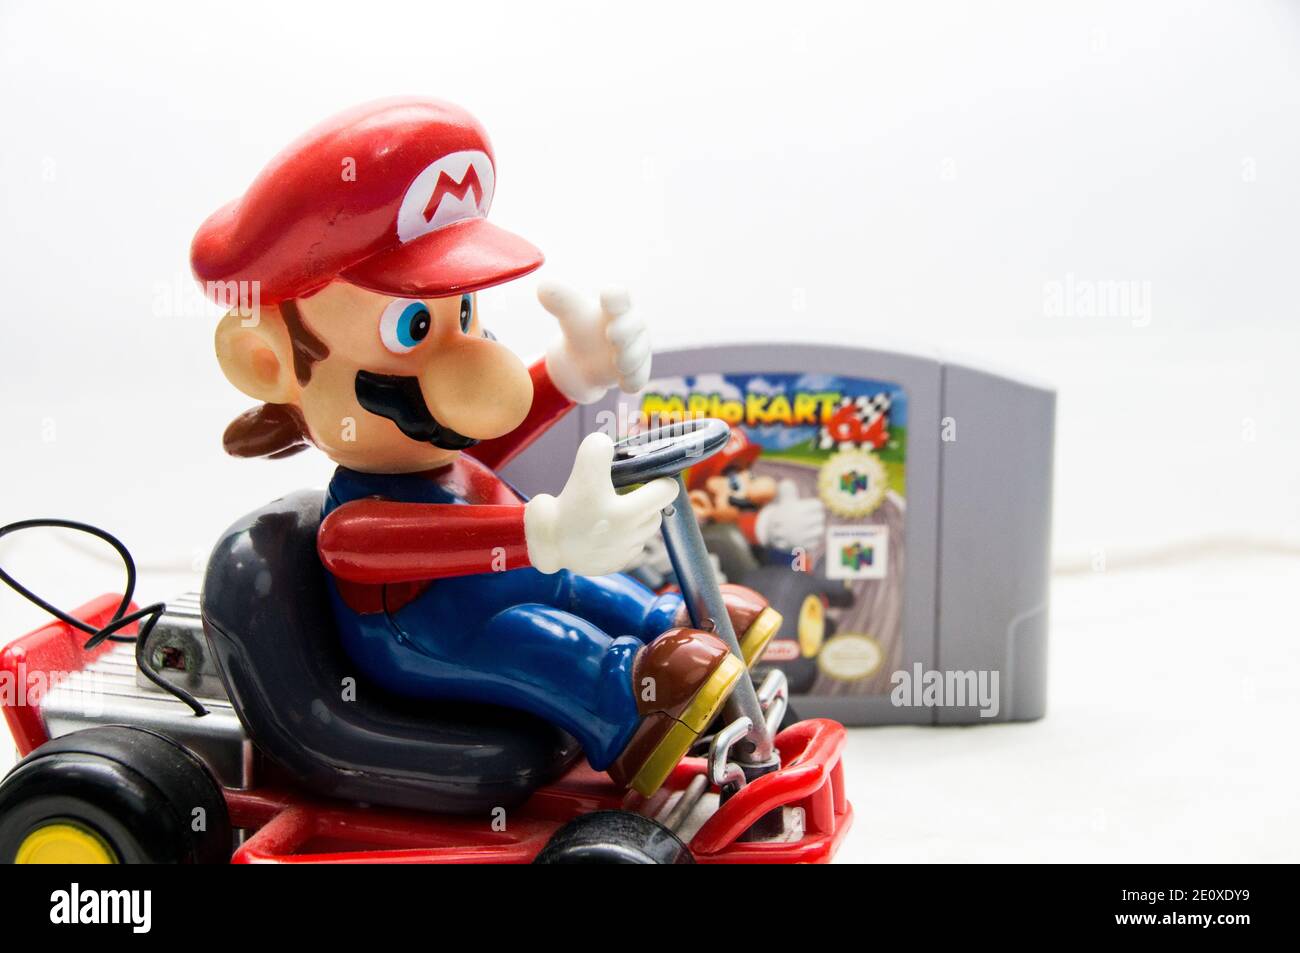 Mario Kart Spielzeug neben einem Mario Kart 64 Spiel Stockfoto